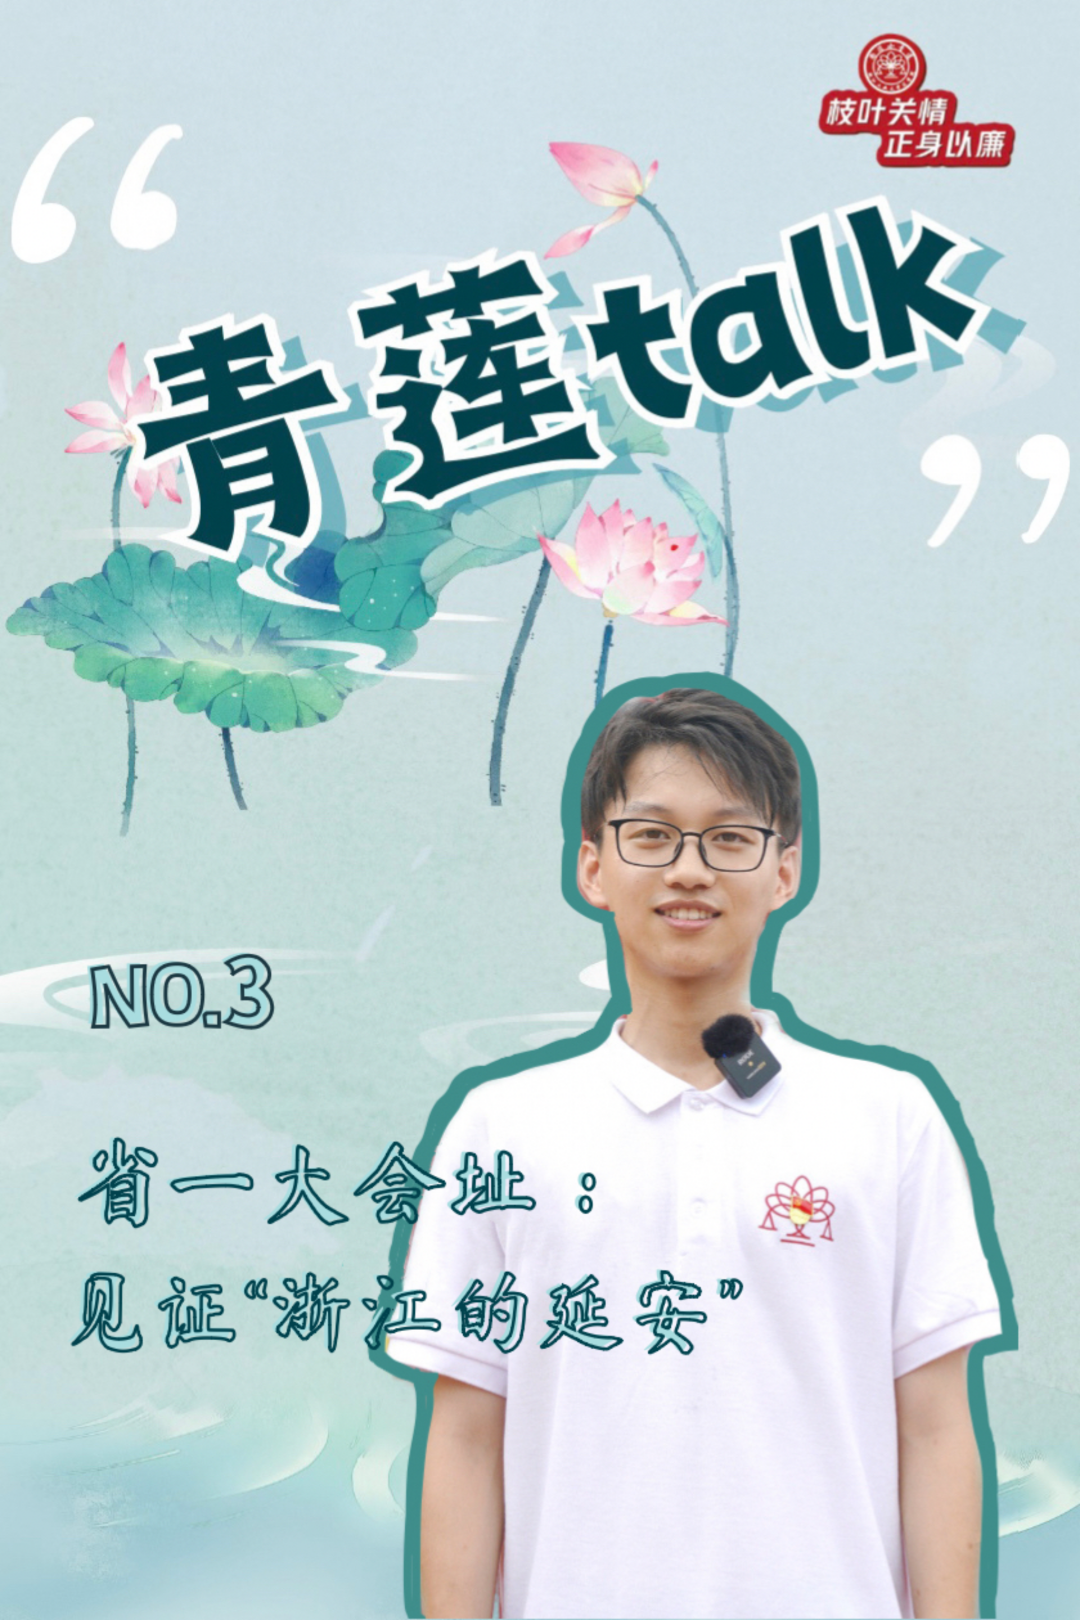 图片16 青莲talk .png